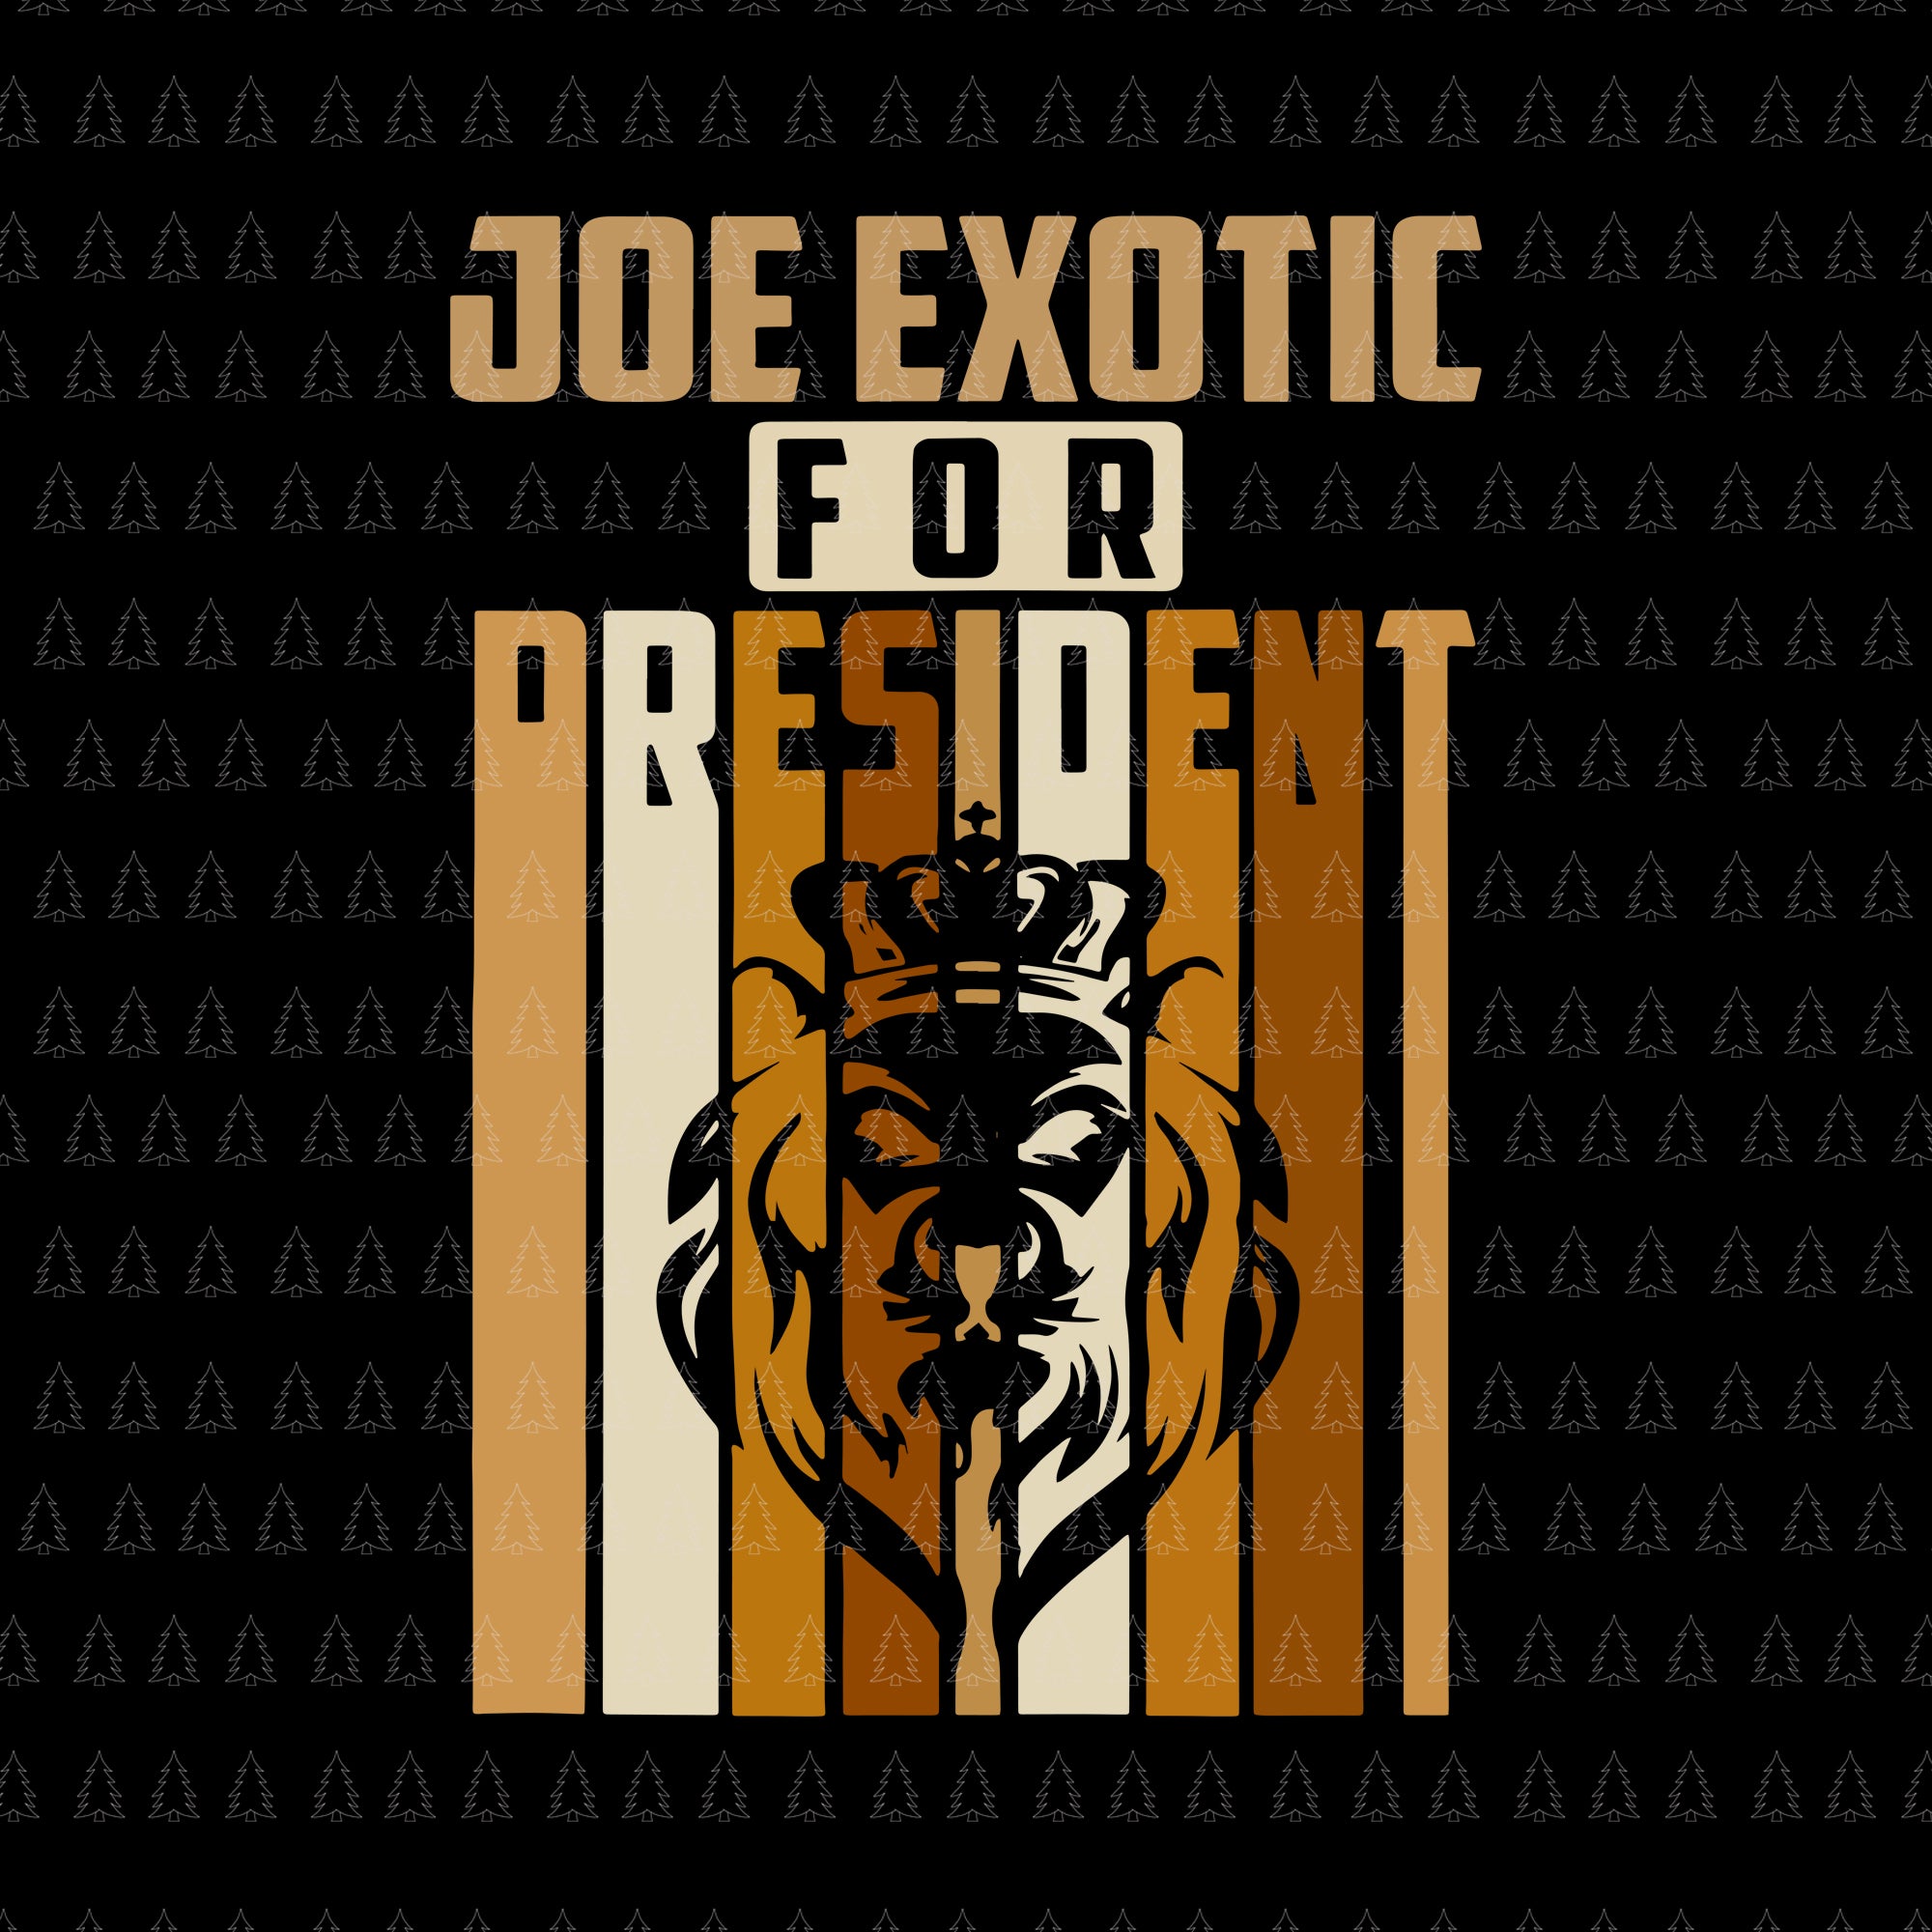 Joe exotic for president, joe exotic for president svg, joe exotic svg, joe exotic vector, free joe exotic svg, free joe exotic